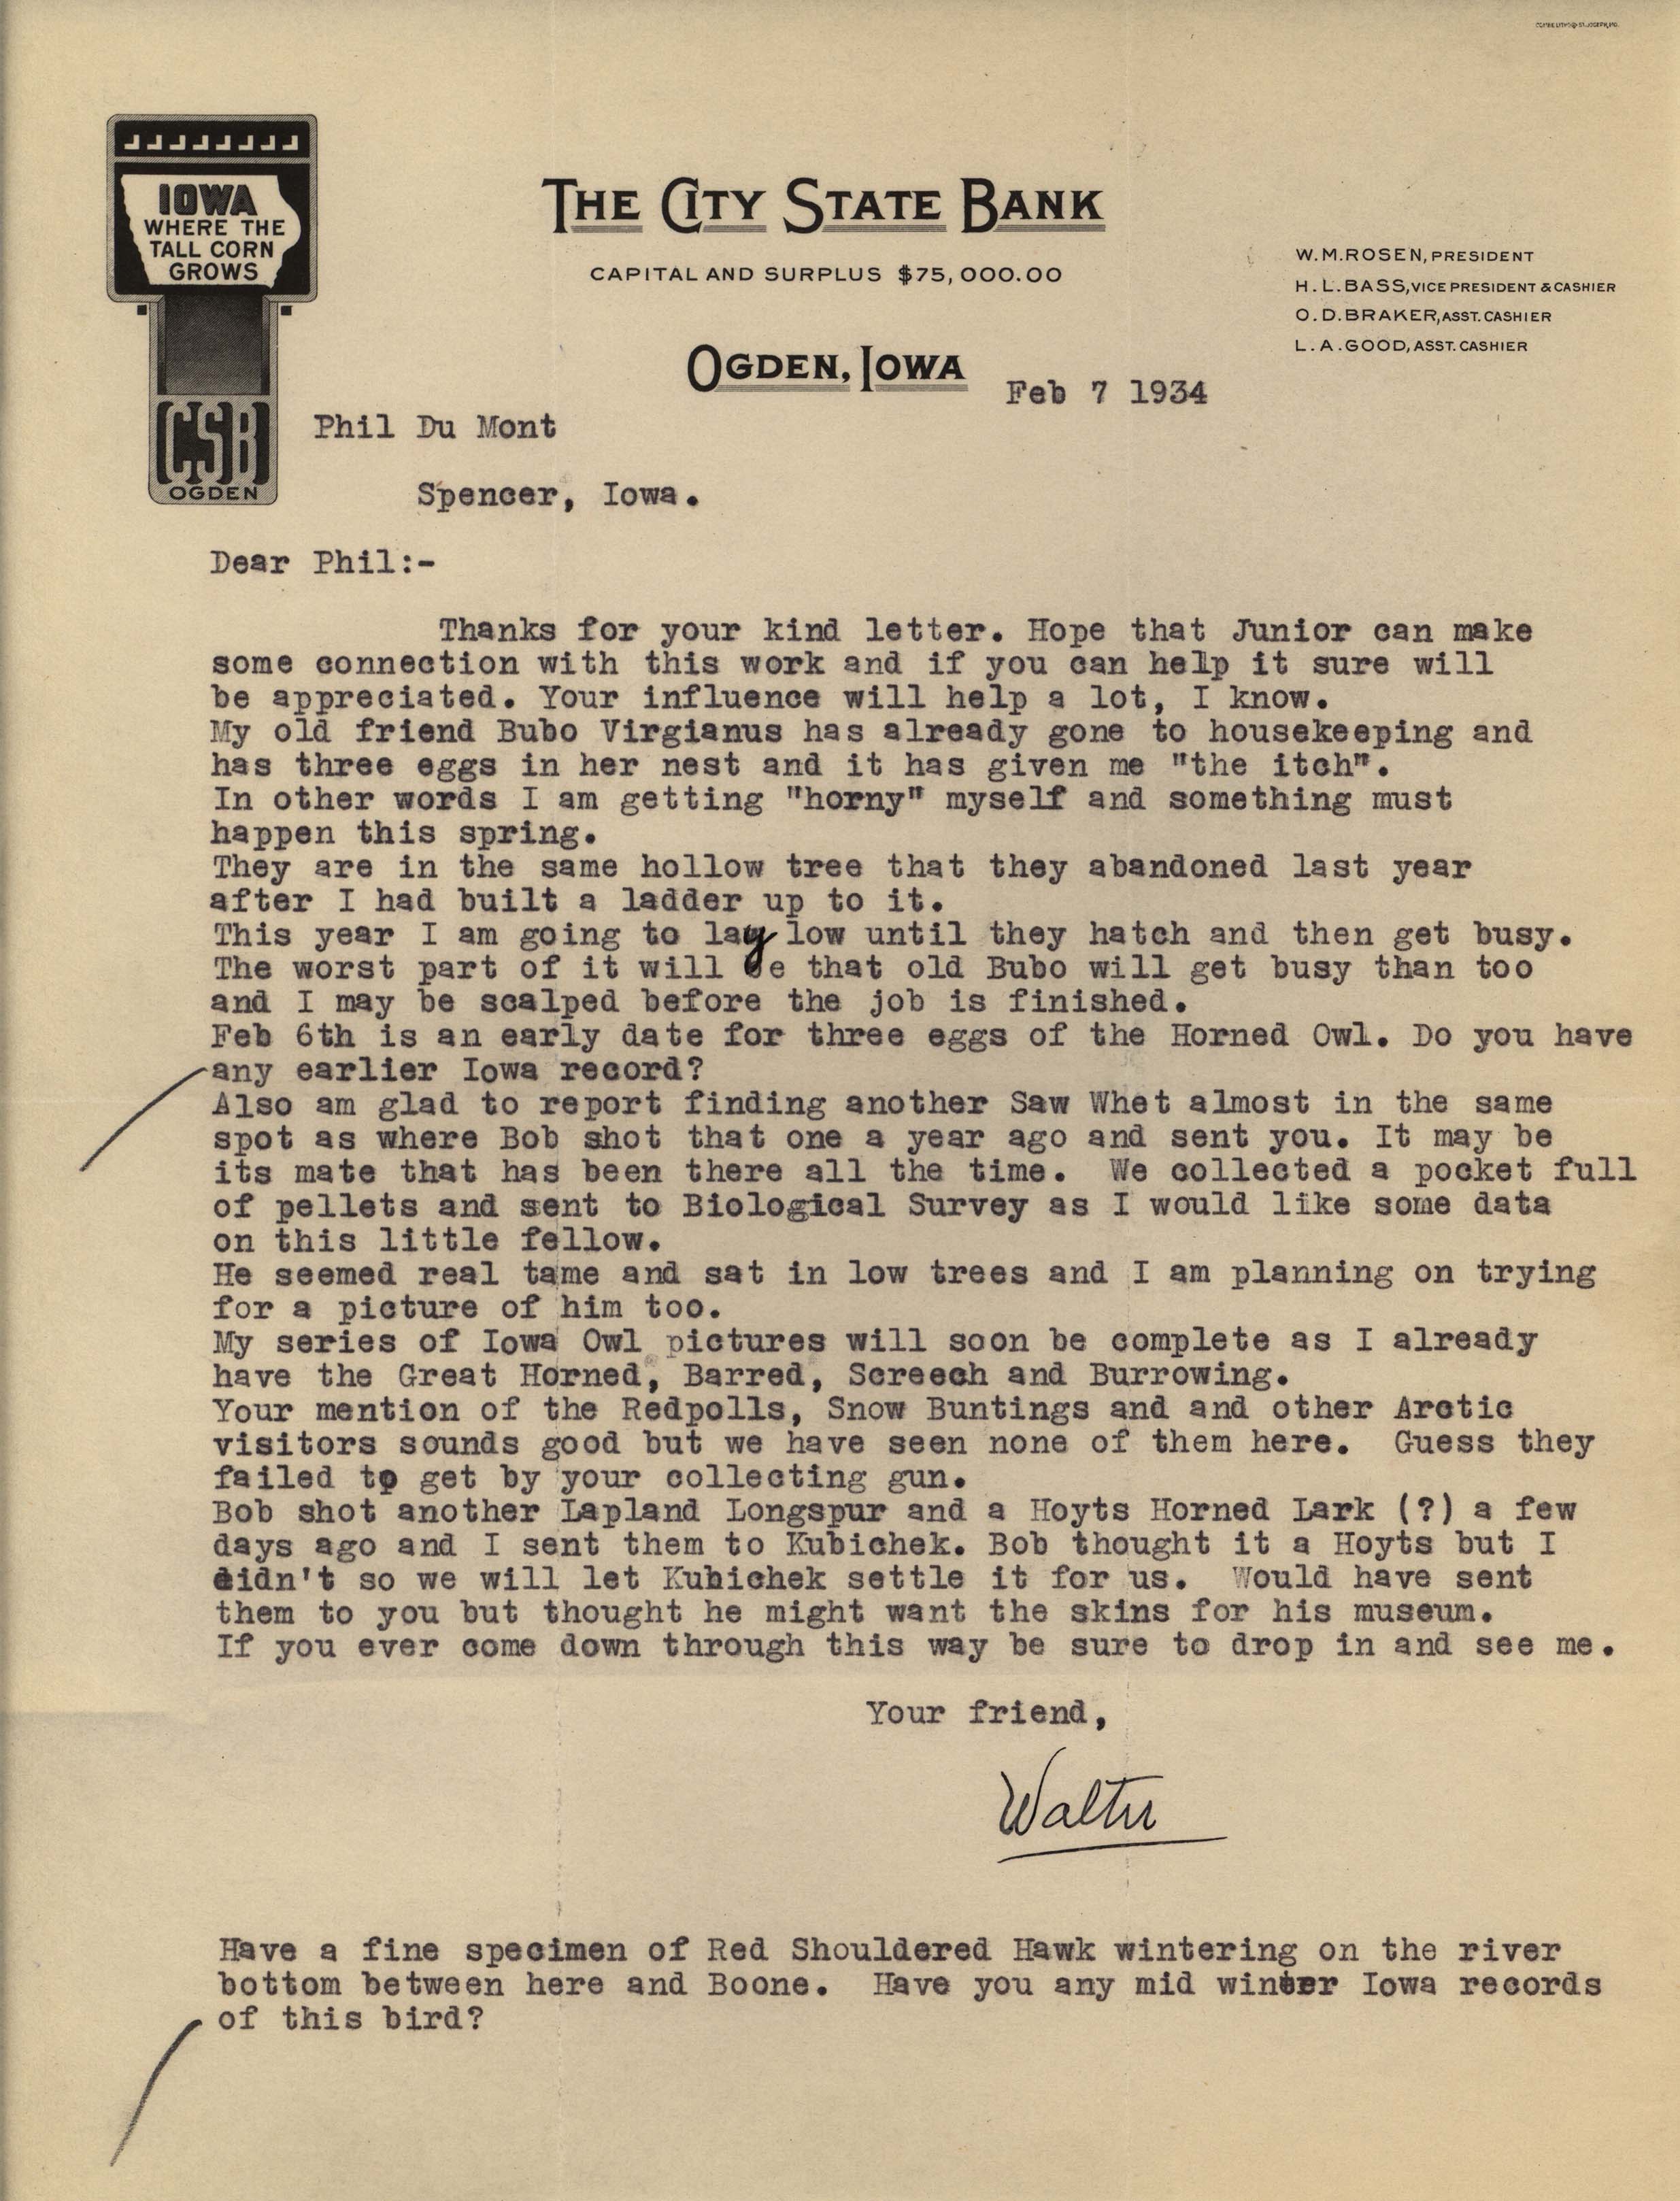 Walter Rosene letter to Philip DuMont regarding Owls, February 7, 1934